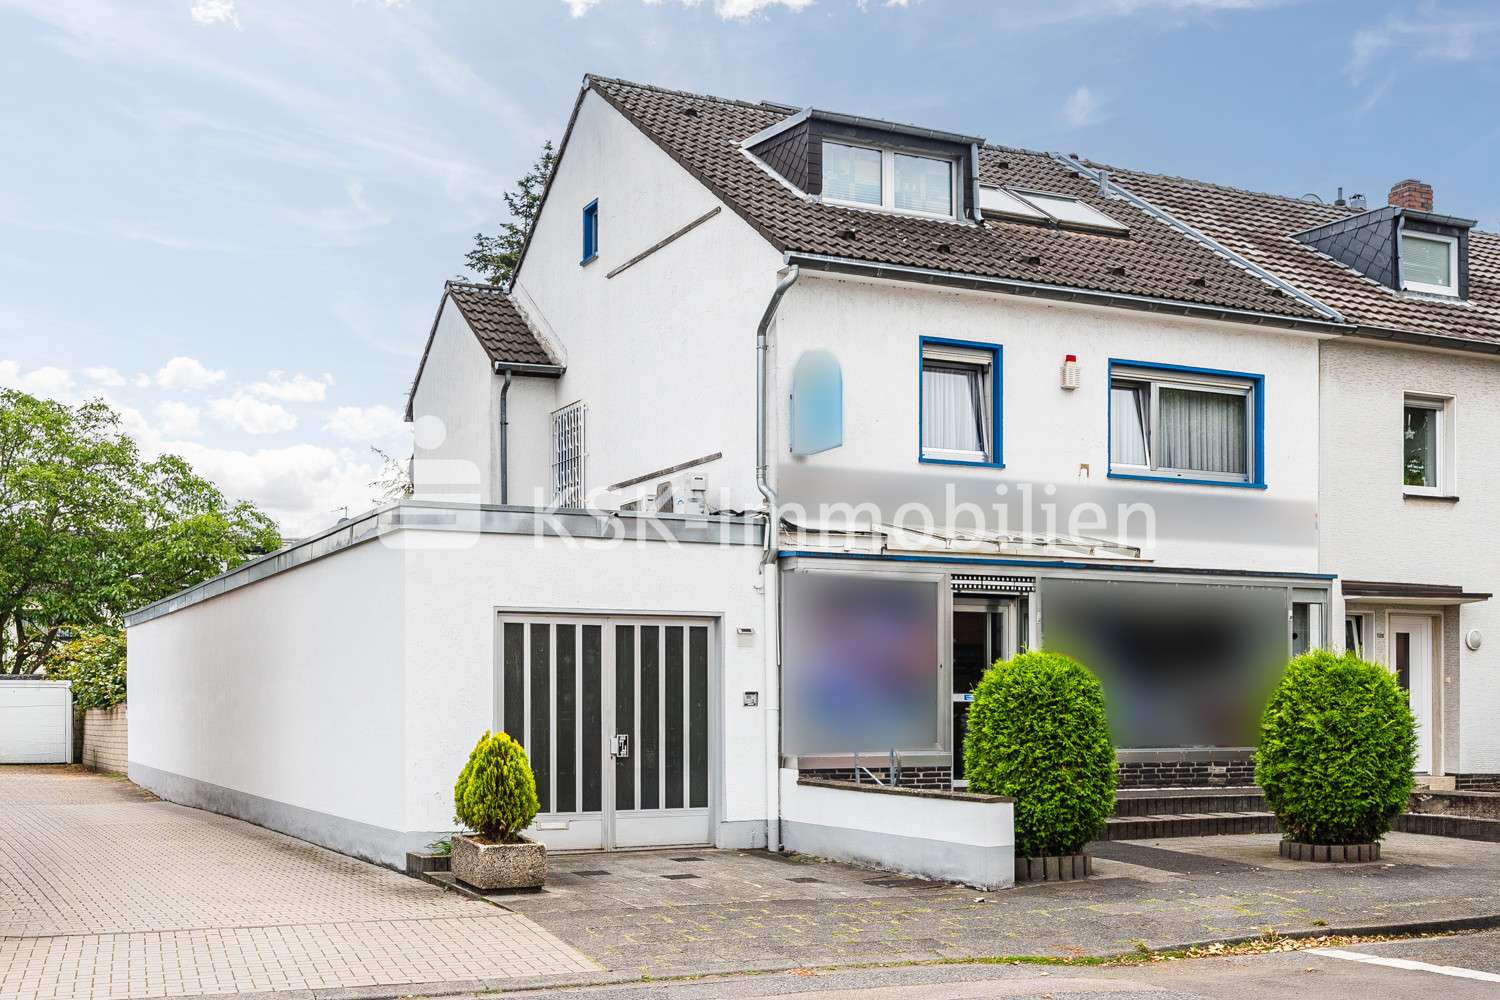 120576 Vorderansicht - Haus in 50769 Köln mit 85m² kaufen